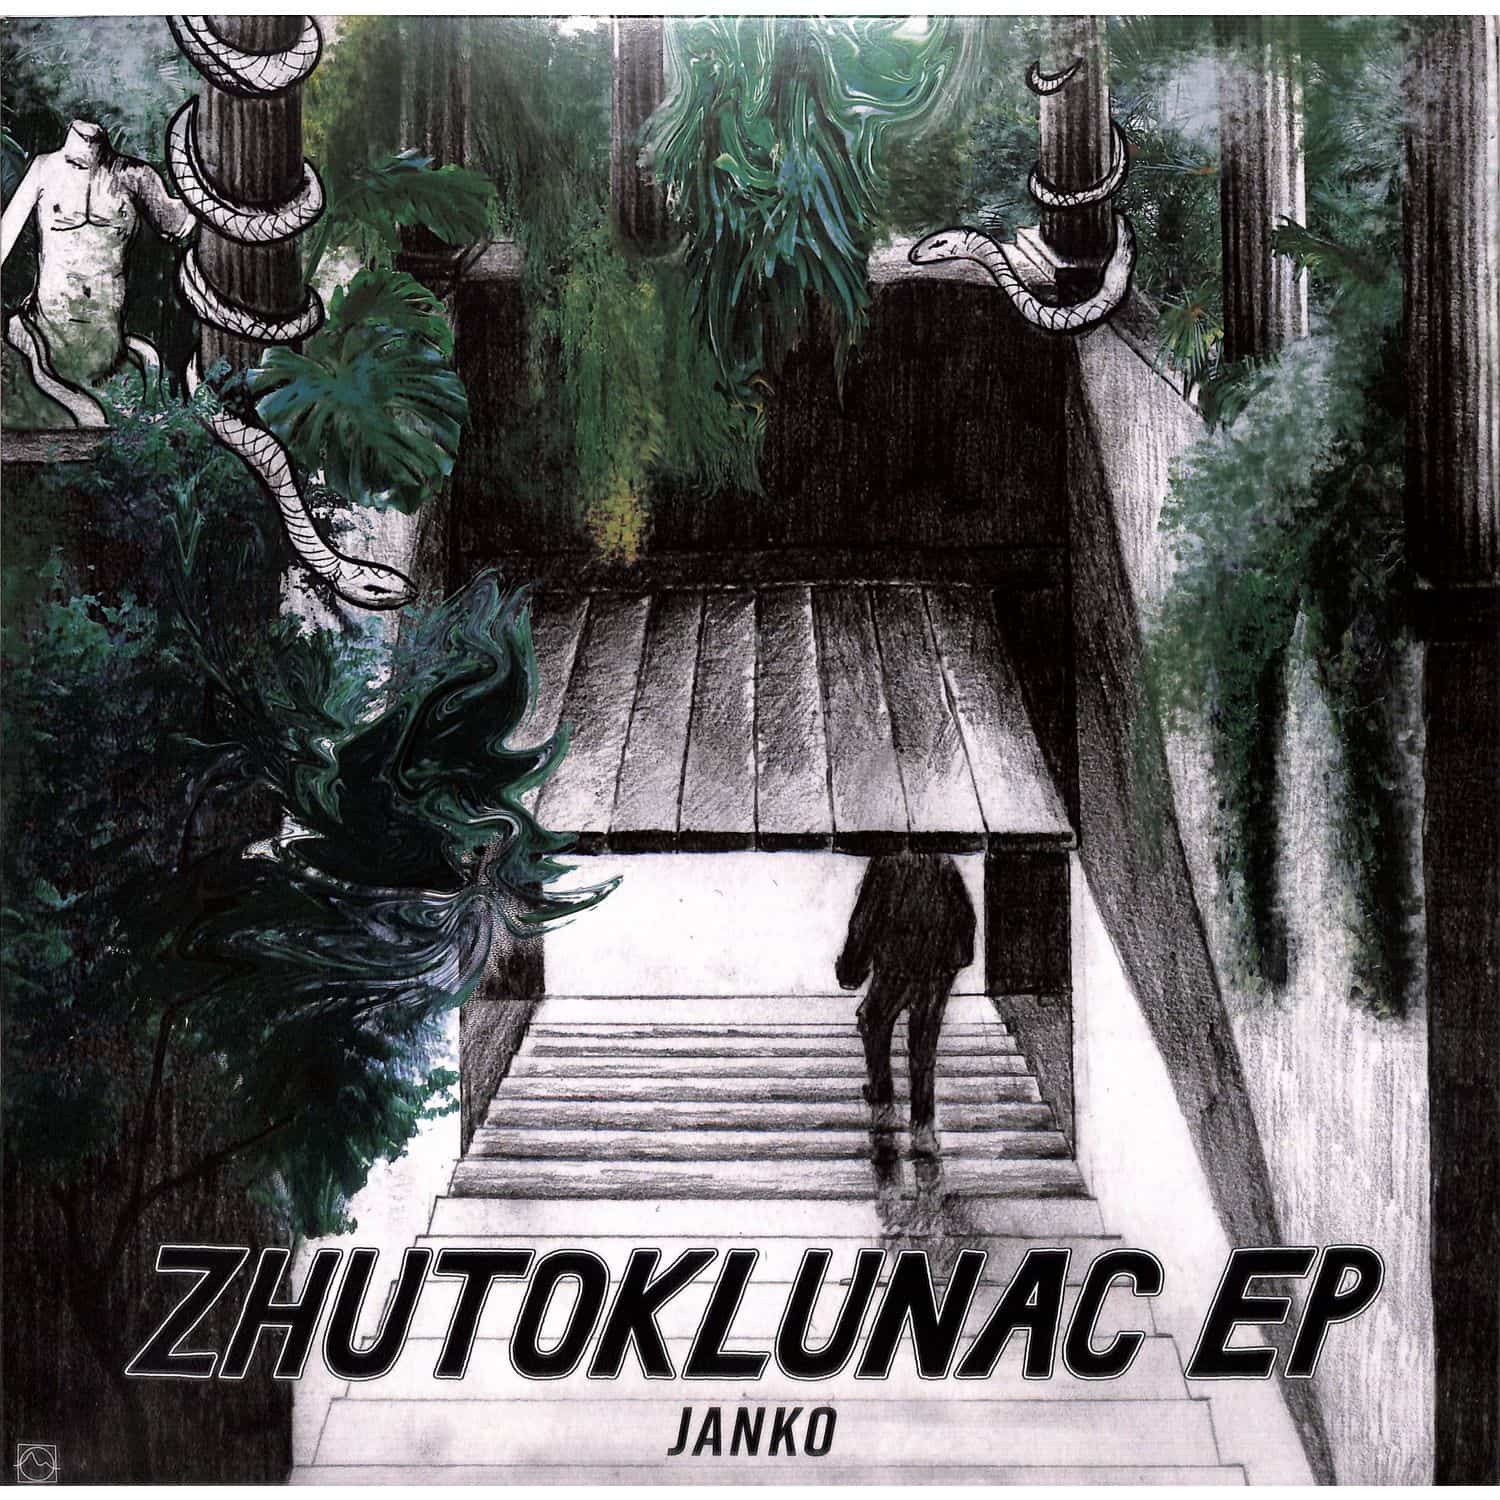 Janko - ZHUTOKLUNAC EP